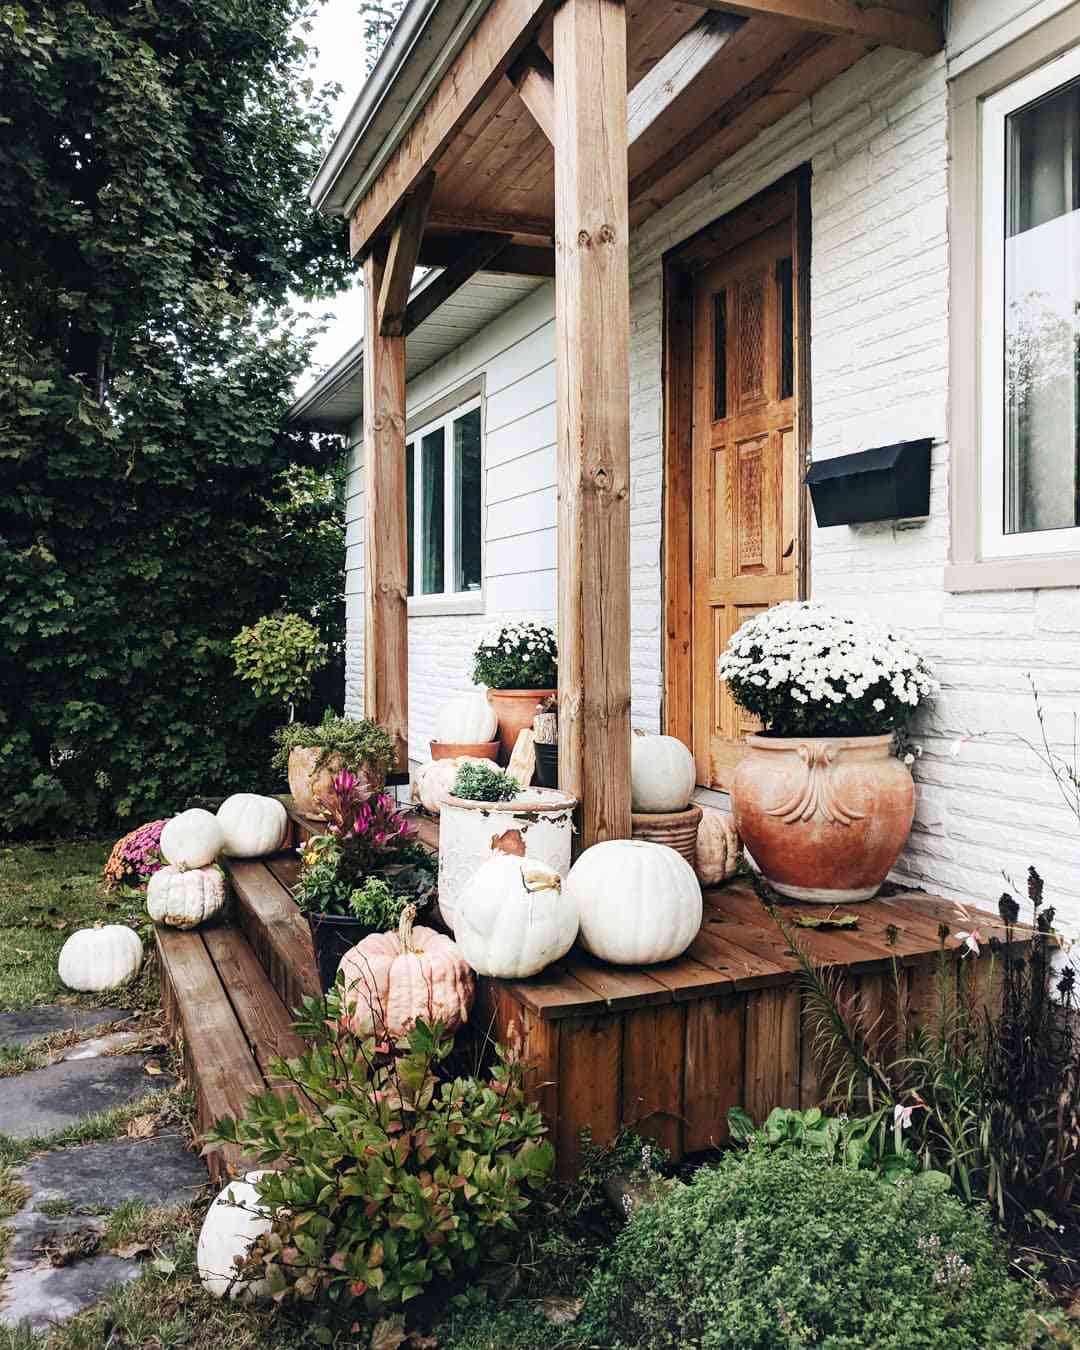 Weißes Bauernhaus mit Holzveranda und Herbstdekor auf der Eingangstreppe